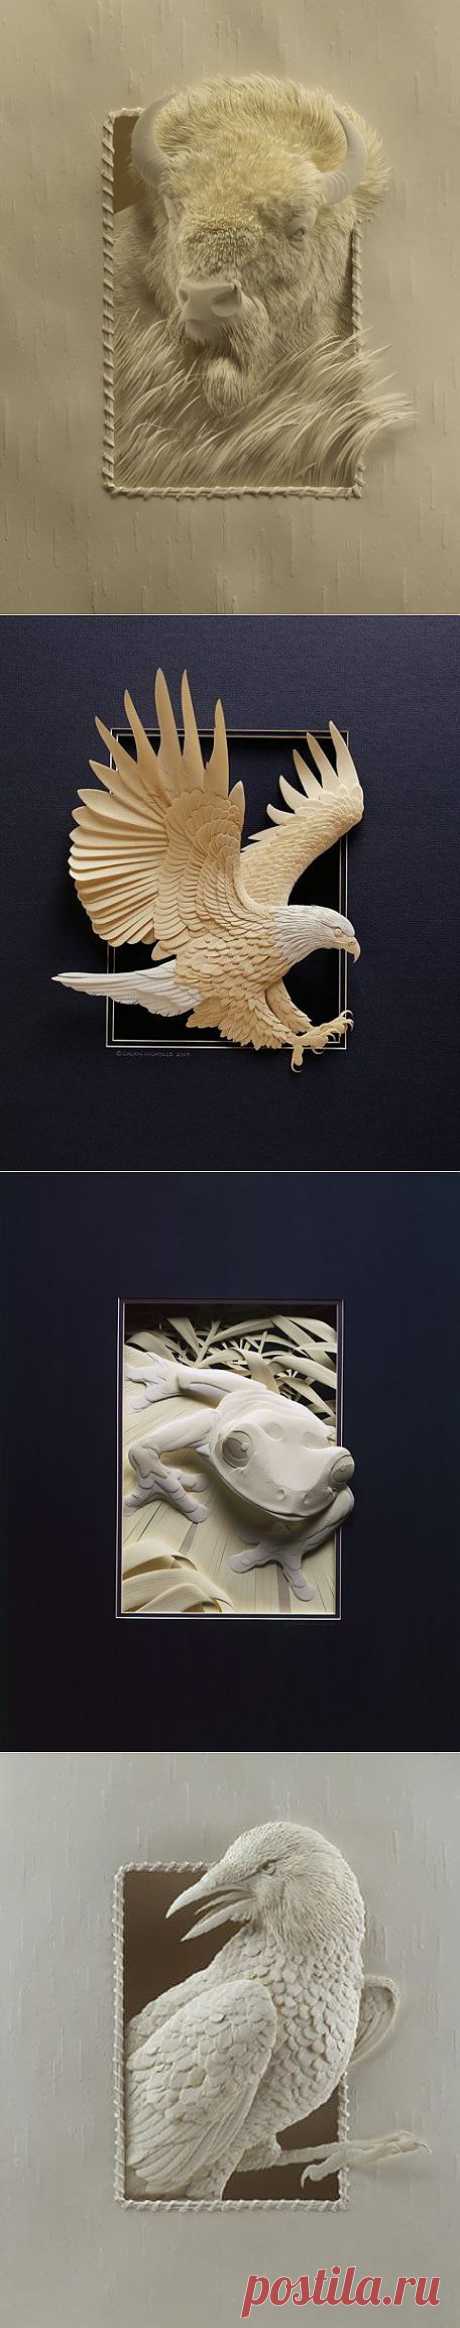 Невероятное оригами Calvin Nicholls